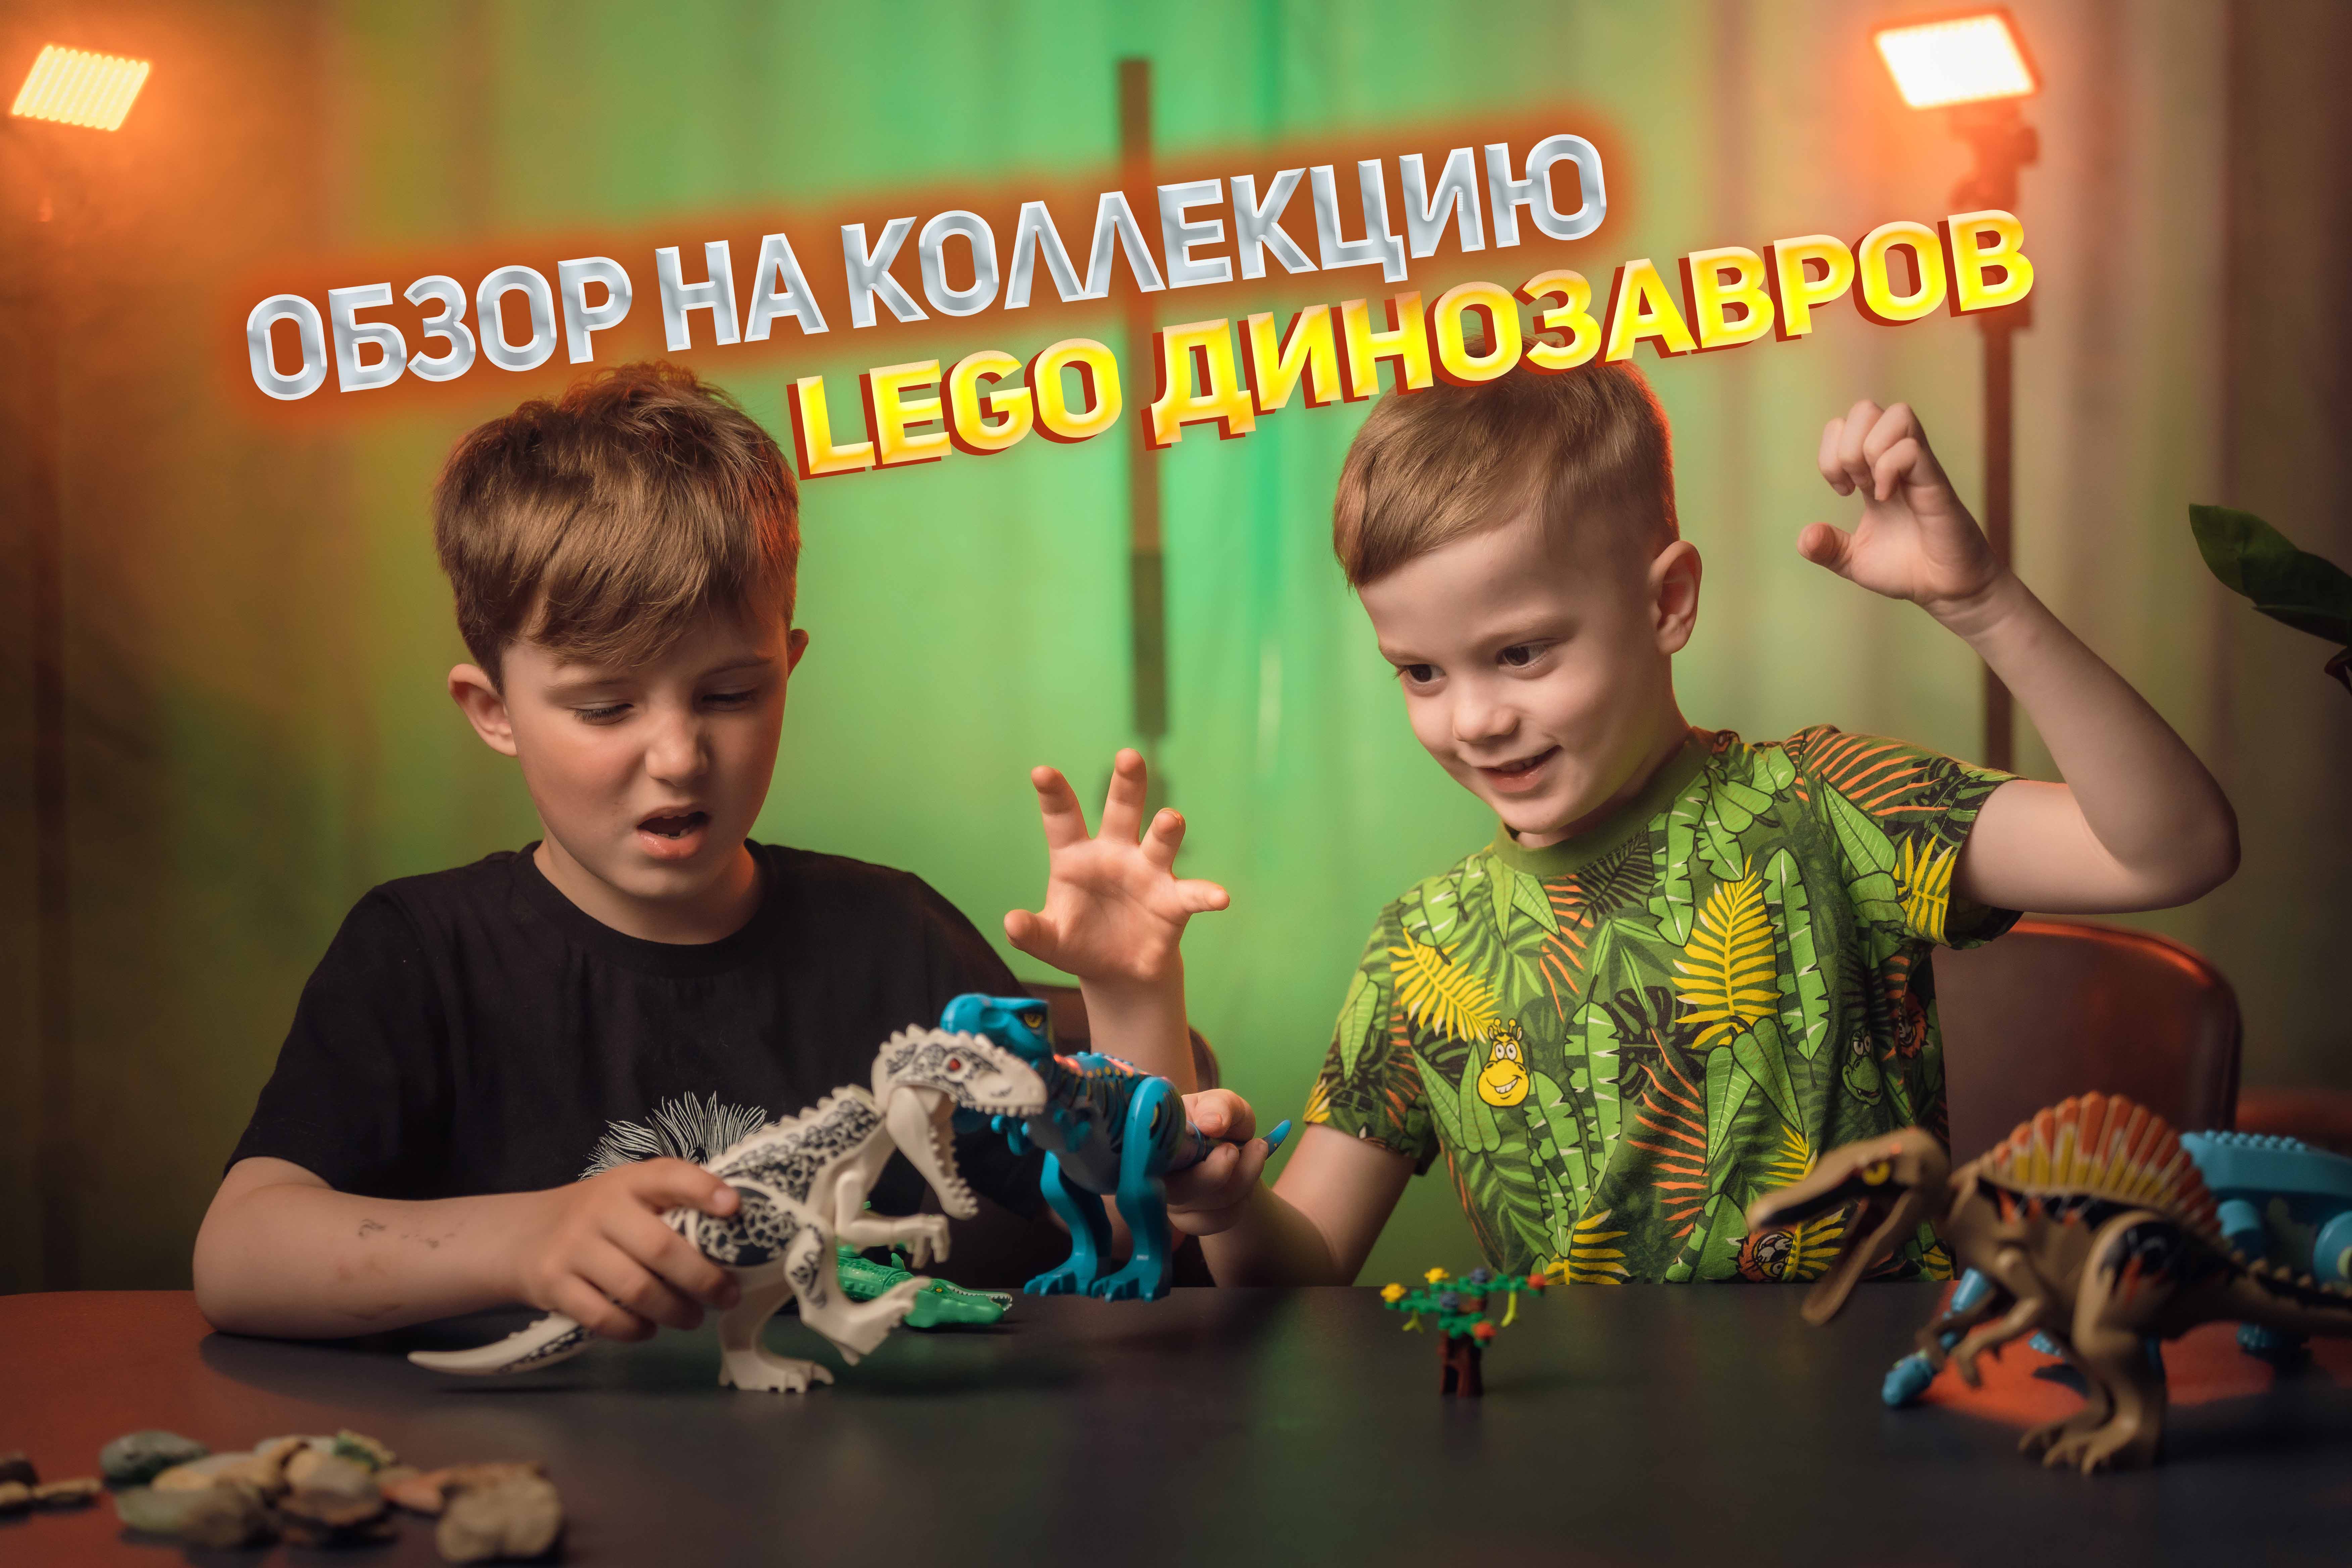 ОБЗОР КОЛЛЕКЦИИ LEGO/ЛЕГО ДИНОЗАВРОВ